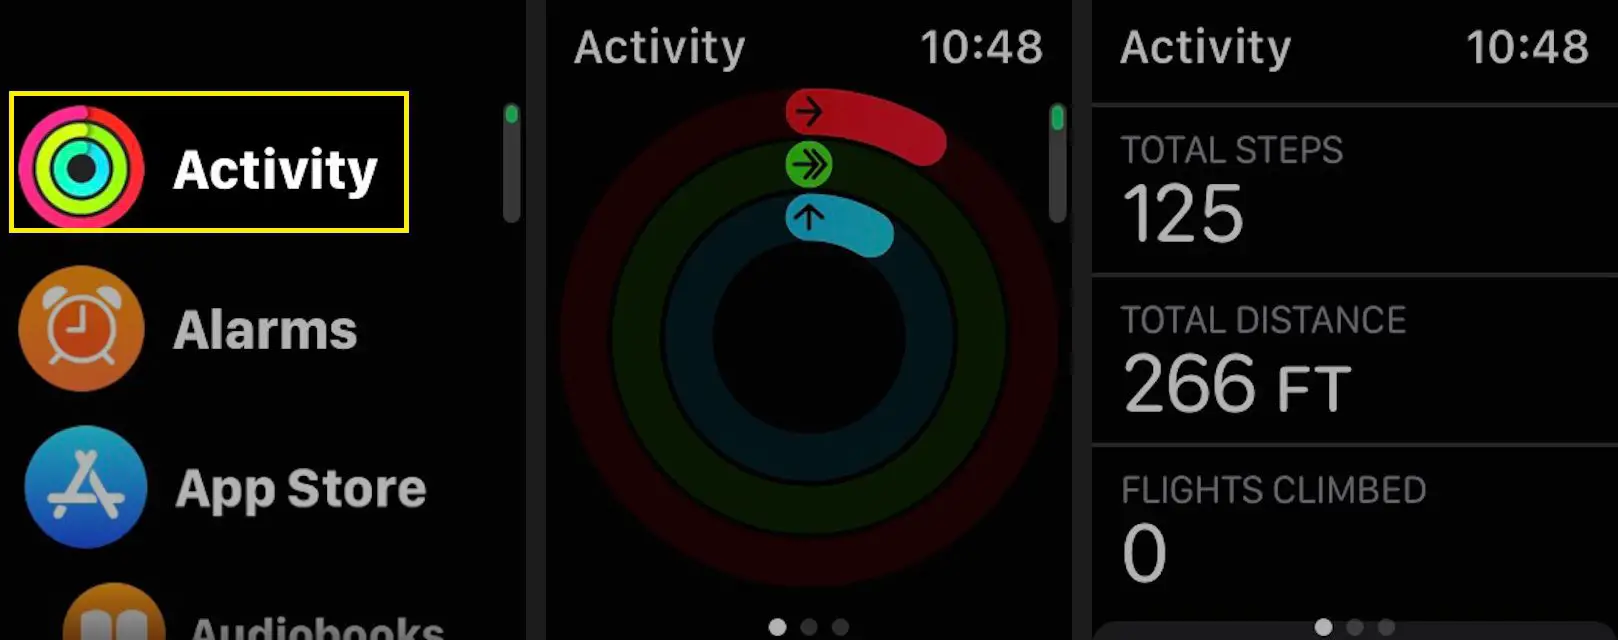 Para verificar seu passo atual e contagem de subidas de escada, inicie o aplicativo Activity em seu Apple Watch e role para baixo para ver seu total de passos, distância total e voos escalados.